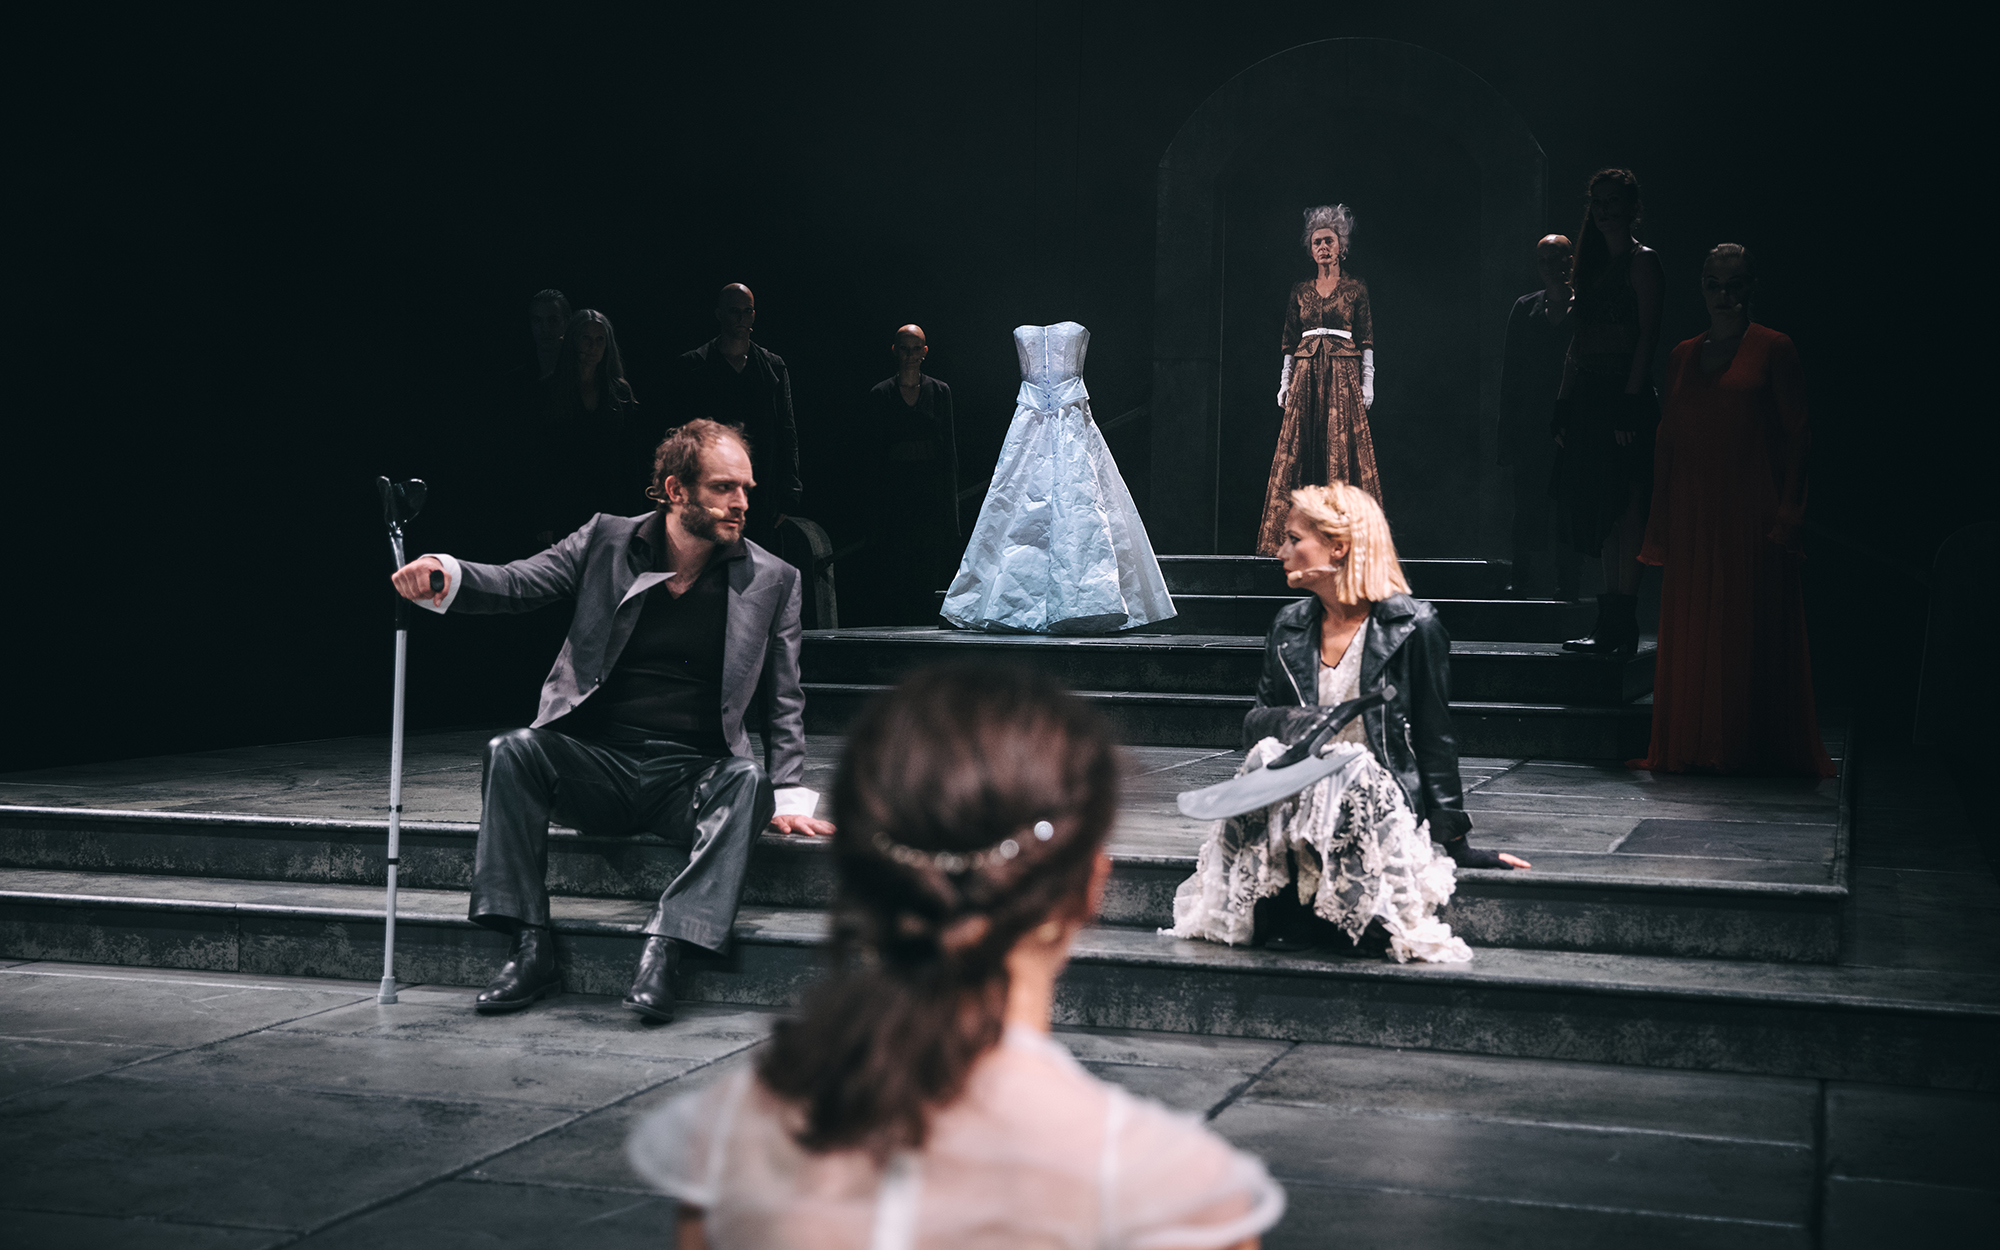 Kalaf (Gregor Gruden) sedi na stopnicah in se obrača k Turandot (Viktorija Bencik Emeršič), ki drži v naročju rabljevo sekiro. V ozadju Kraljica mati (Mirjam Korbar) in Mlada Turandot (Lara Wolf). Na stopnicah stojalo z belo poročno obleko. Avtor fotograf